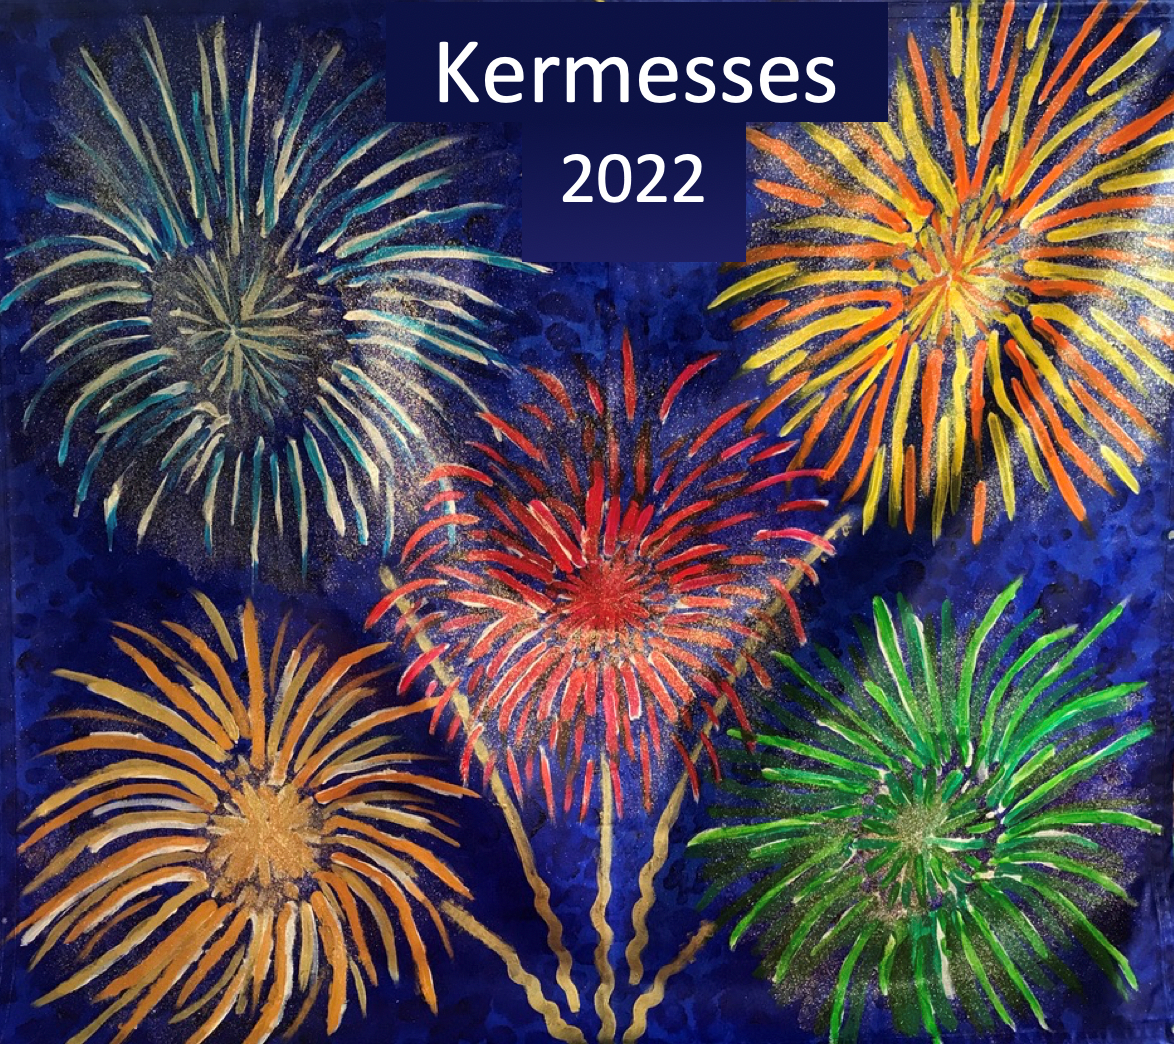 Kermesses 2022